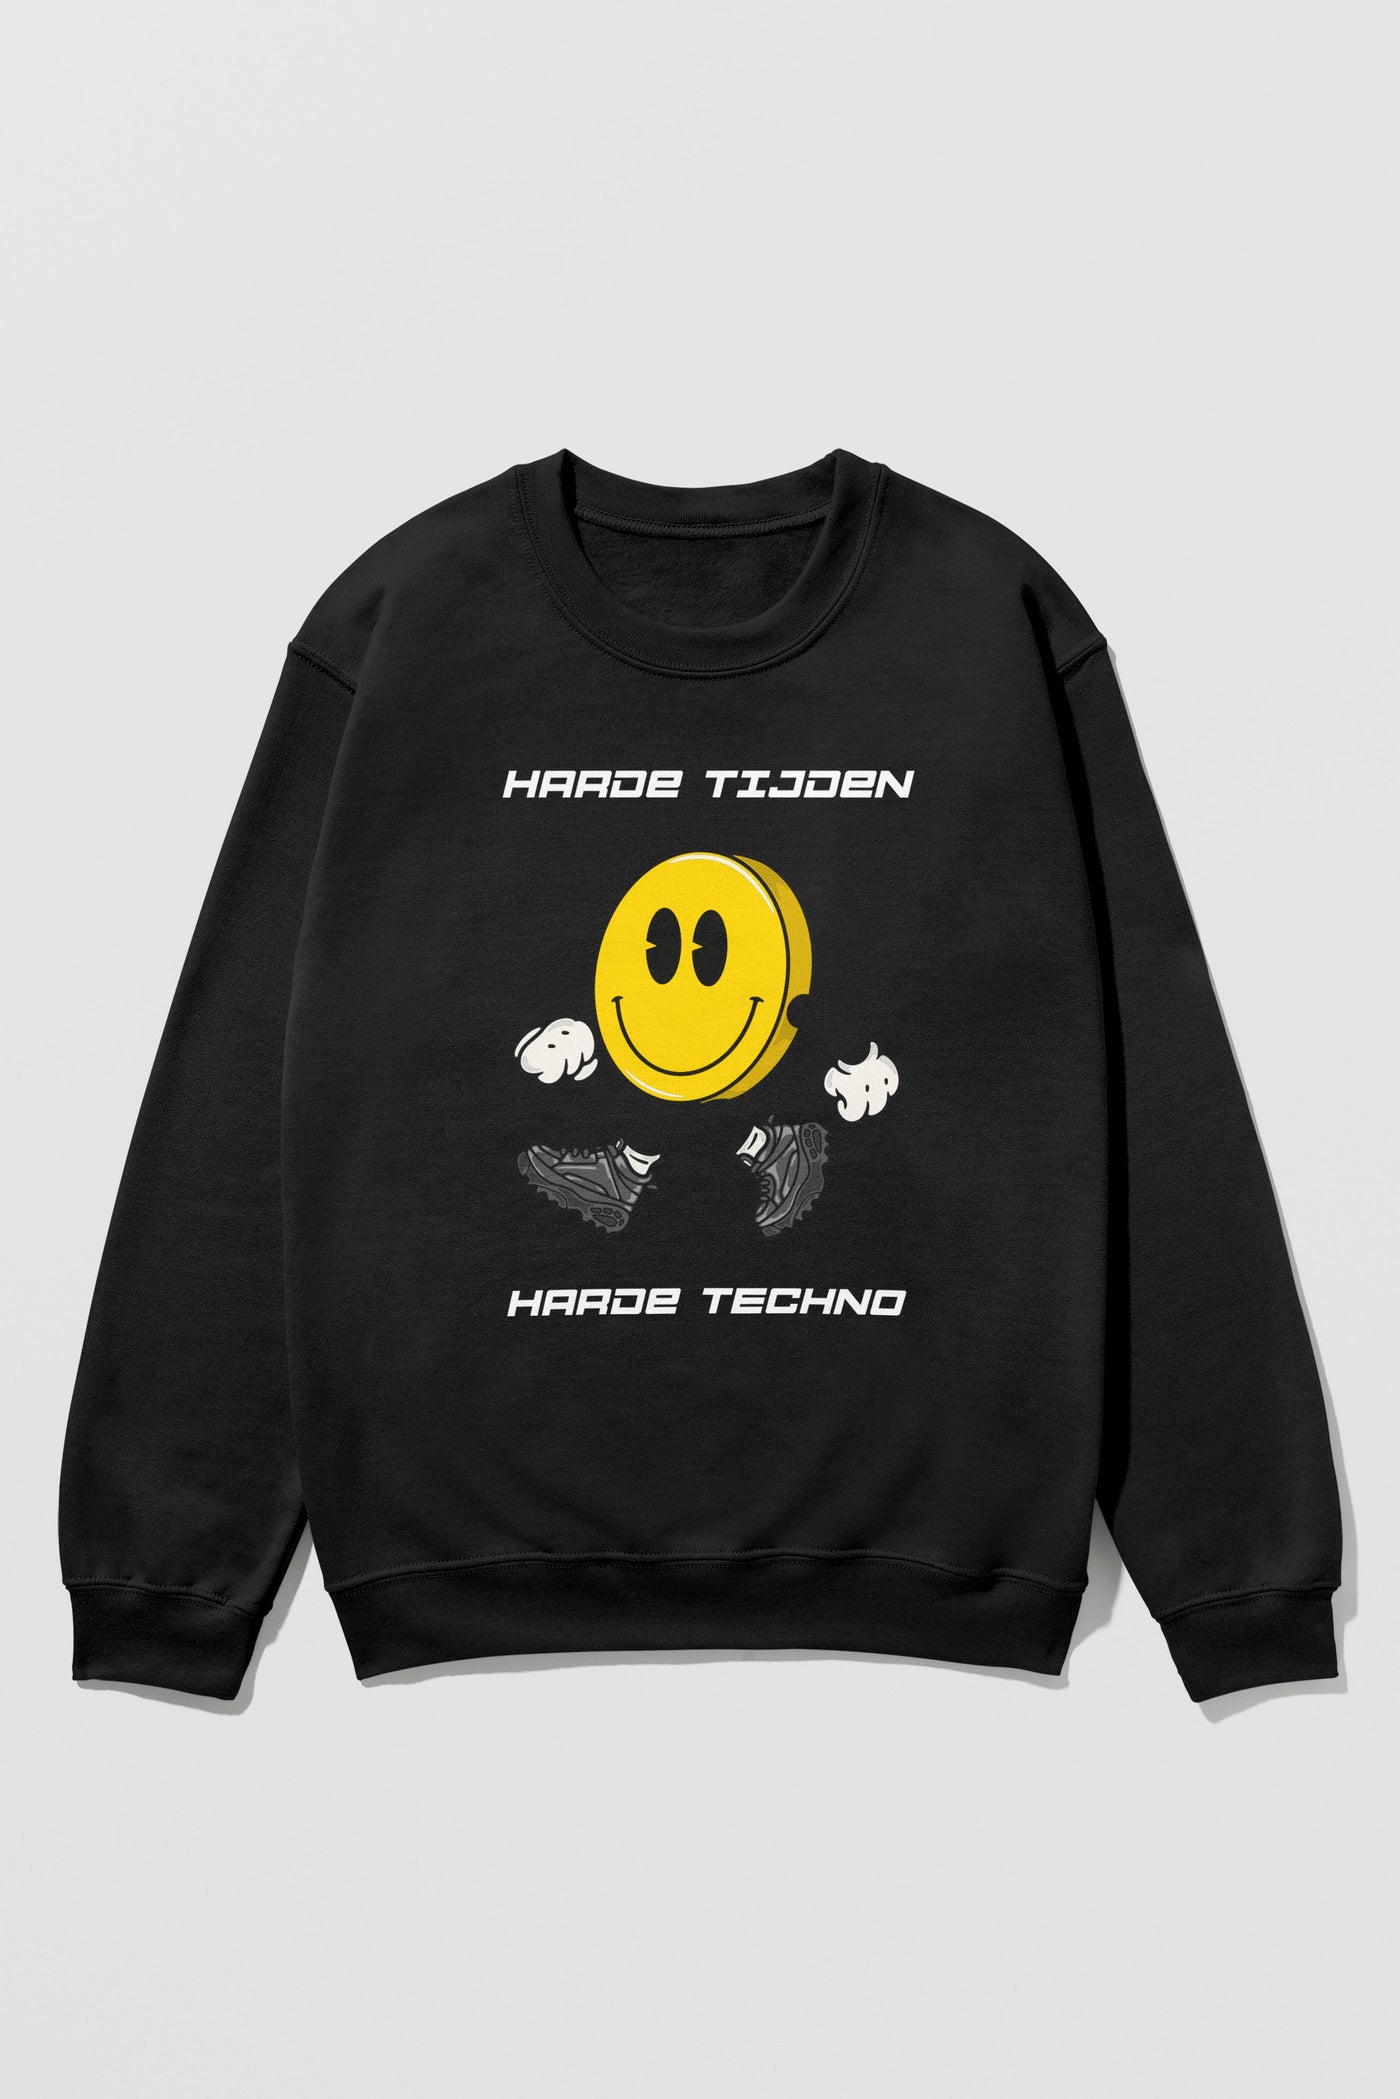 Harde Tijden Harde Techno | Acid Sweater (laatste stuks)